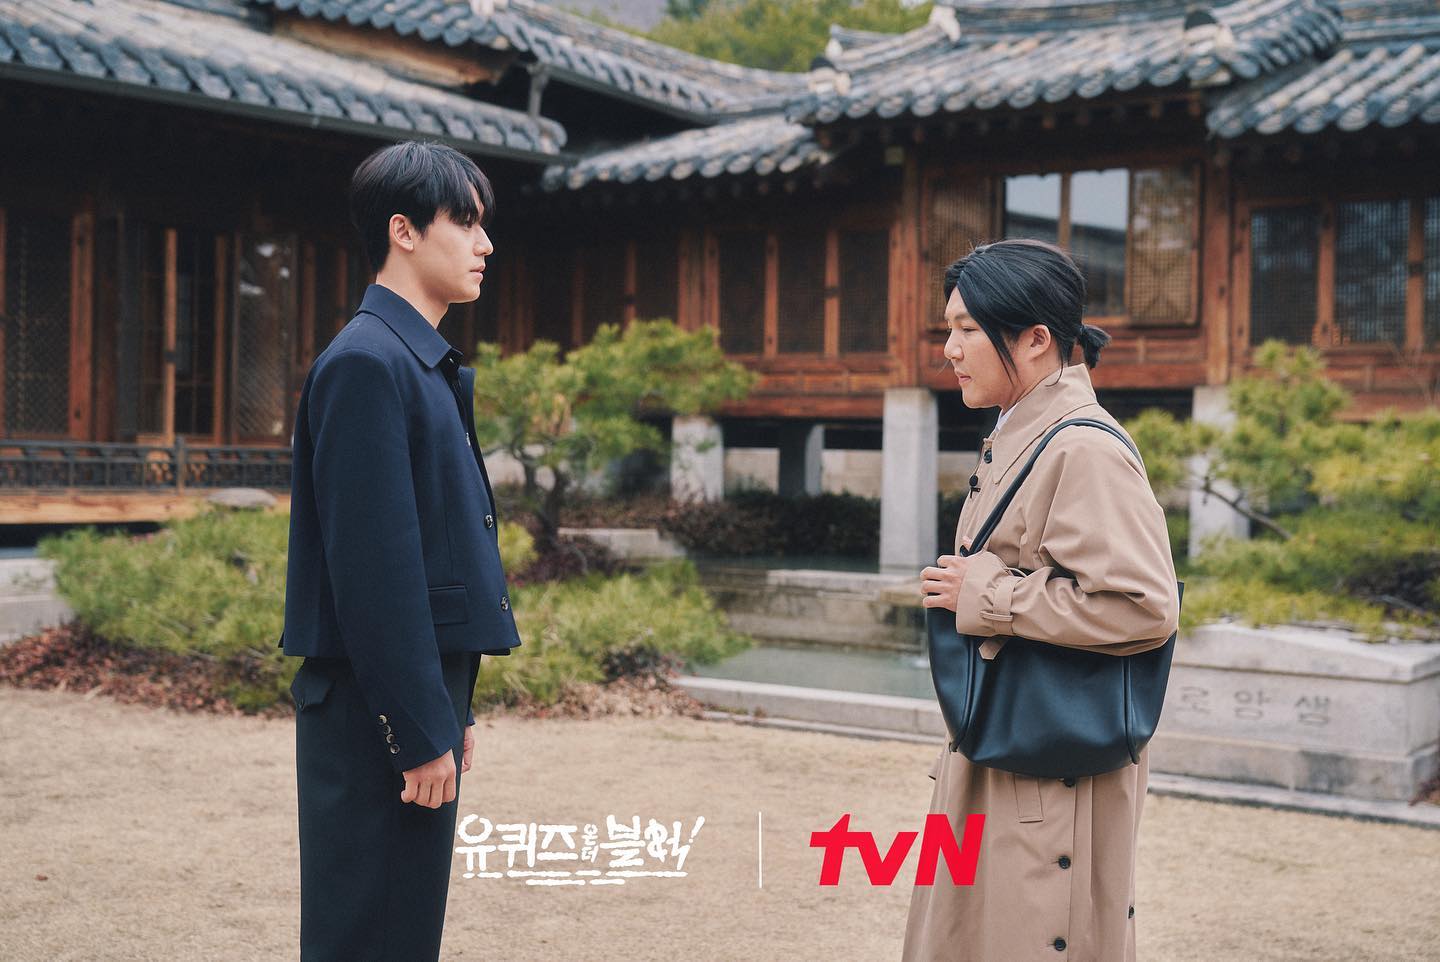 배우 이도현, ‘유 퀴즈 온 더 블럭’ 출연 
tvN 제공